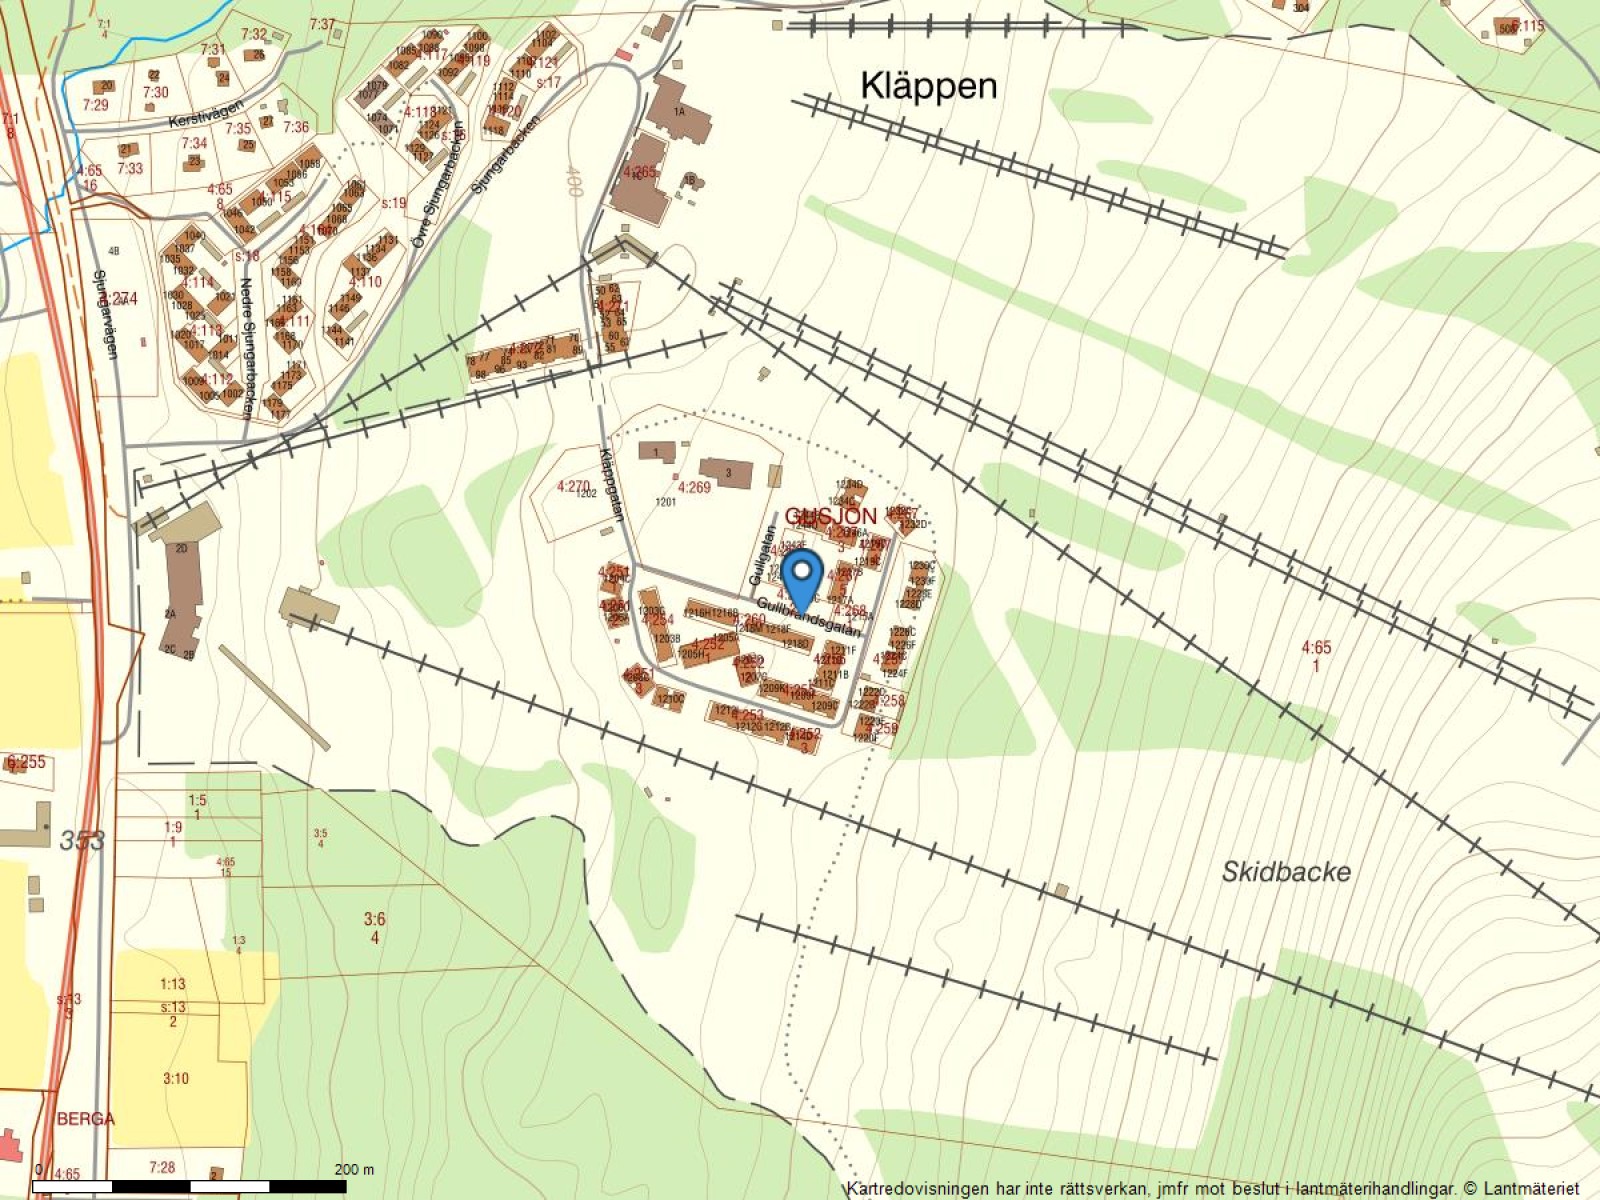 Fastighetskarta Gullbrändsgatan 1213 C